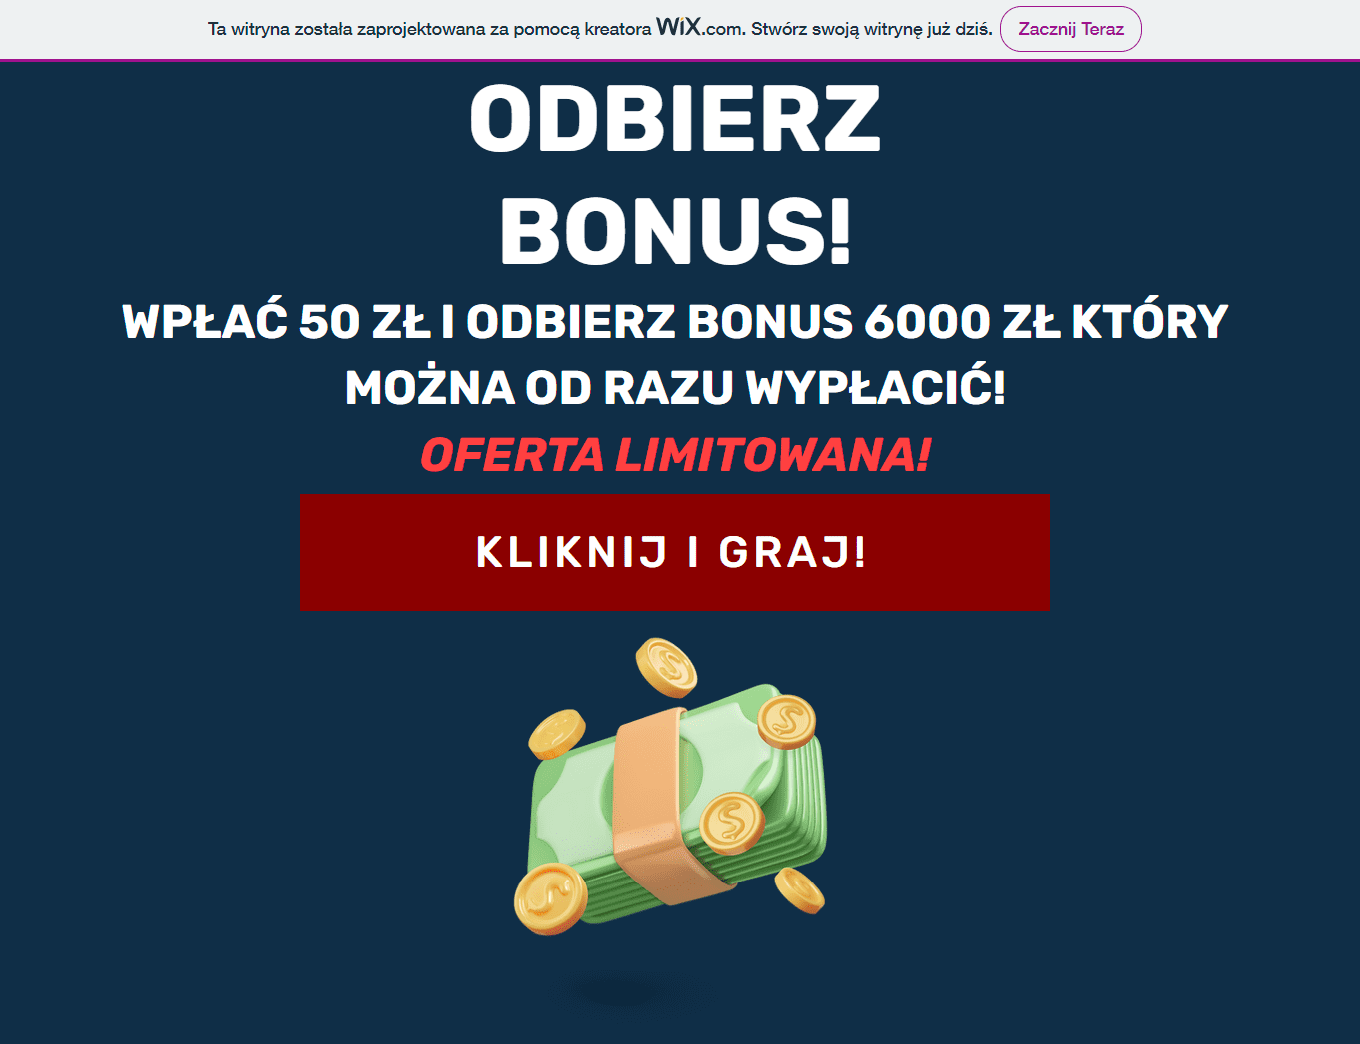 Zrzut ekranu ze strony internetowej kasyna. Informacja o możliwości odebrania bonusu w wysokości 6 tys. zł. 